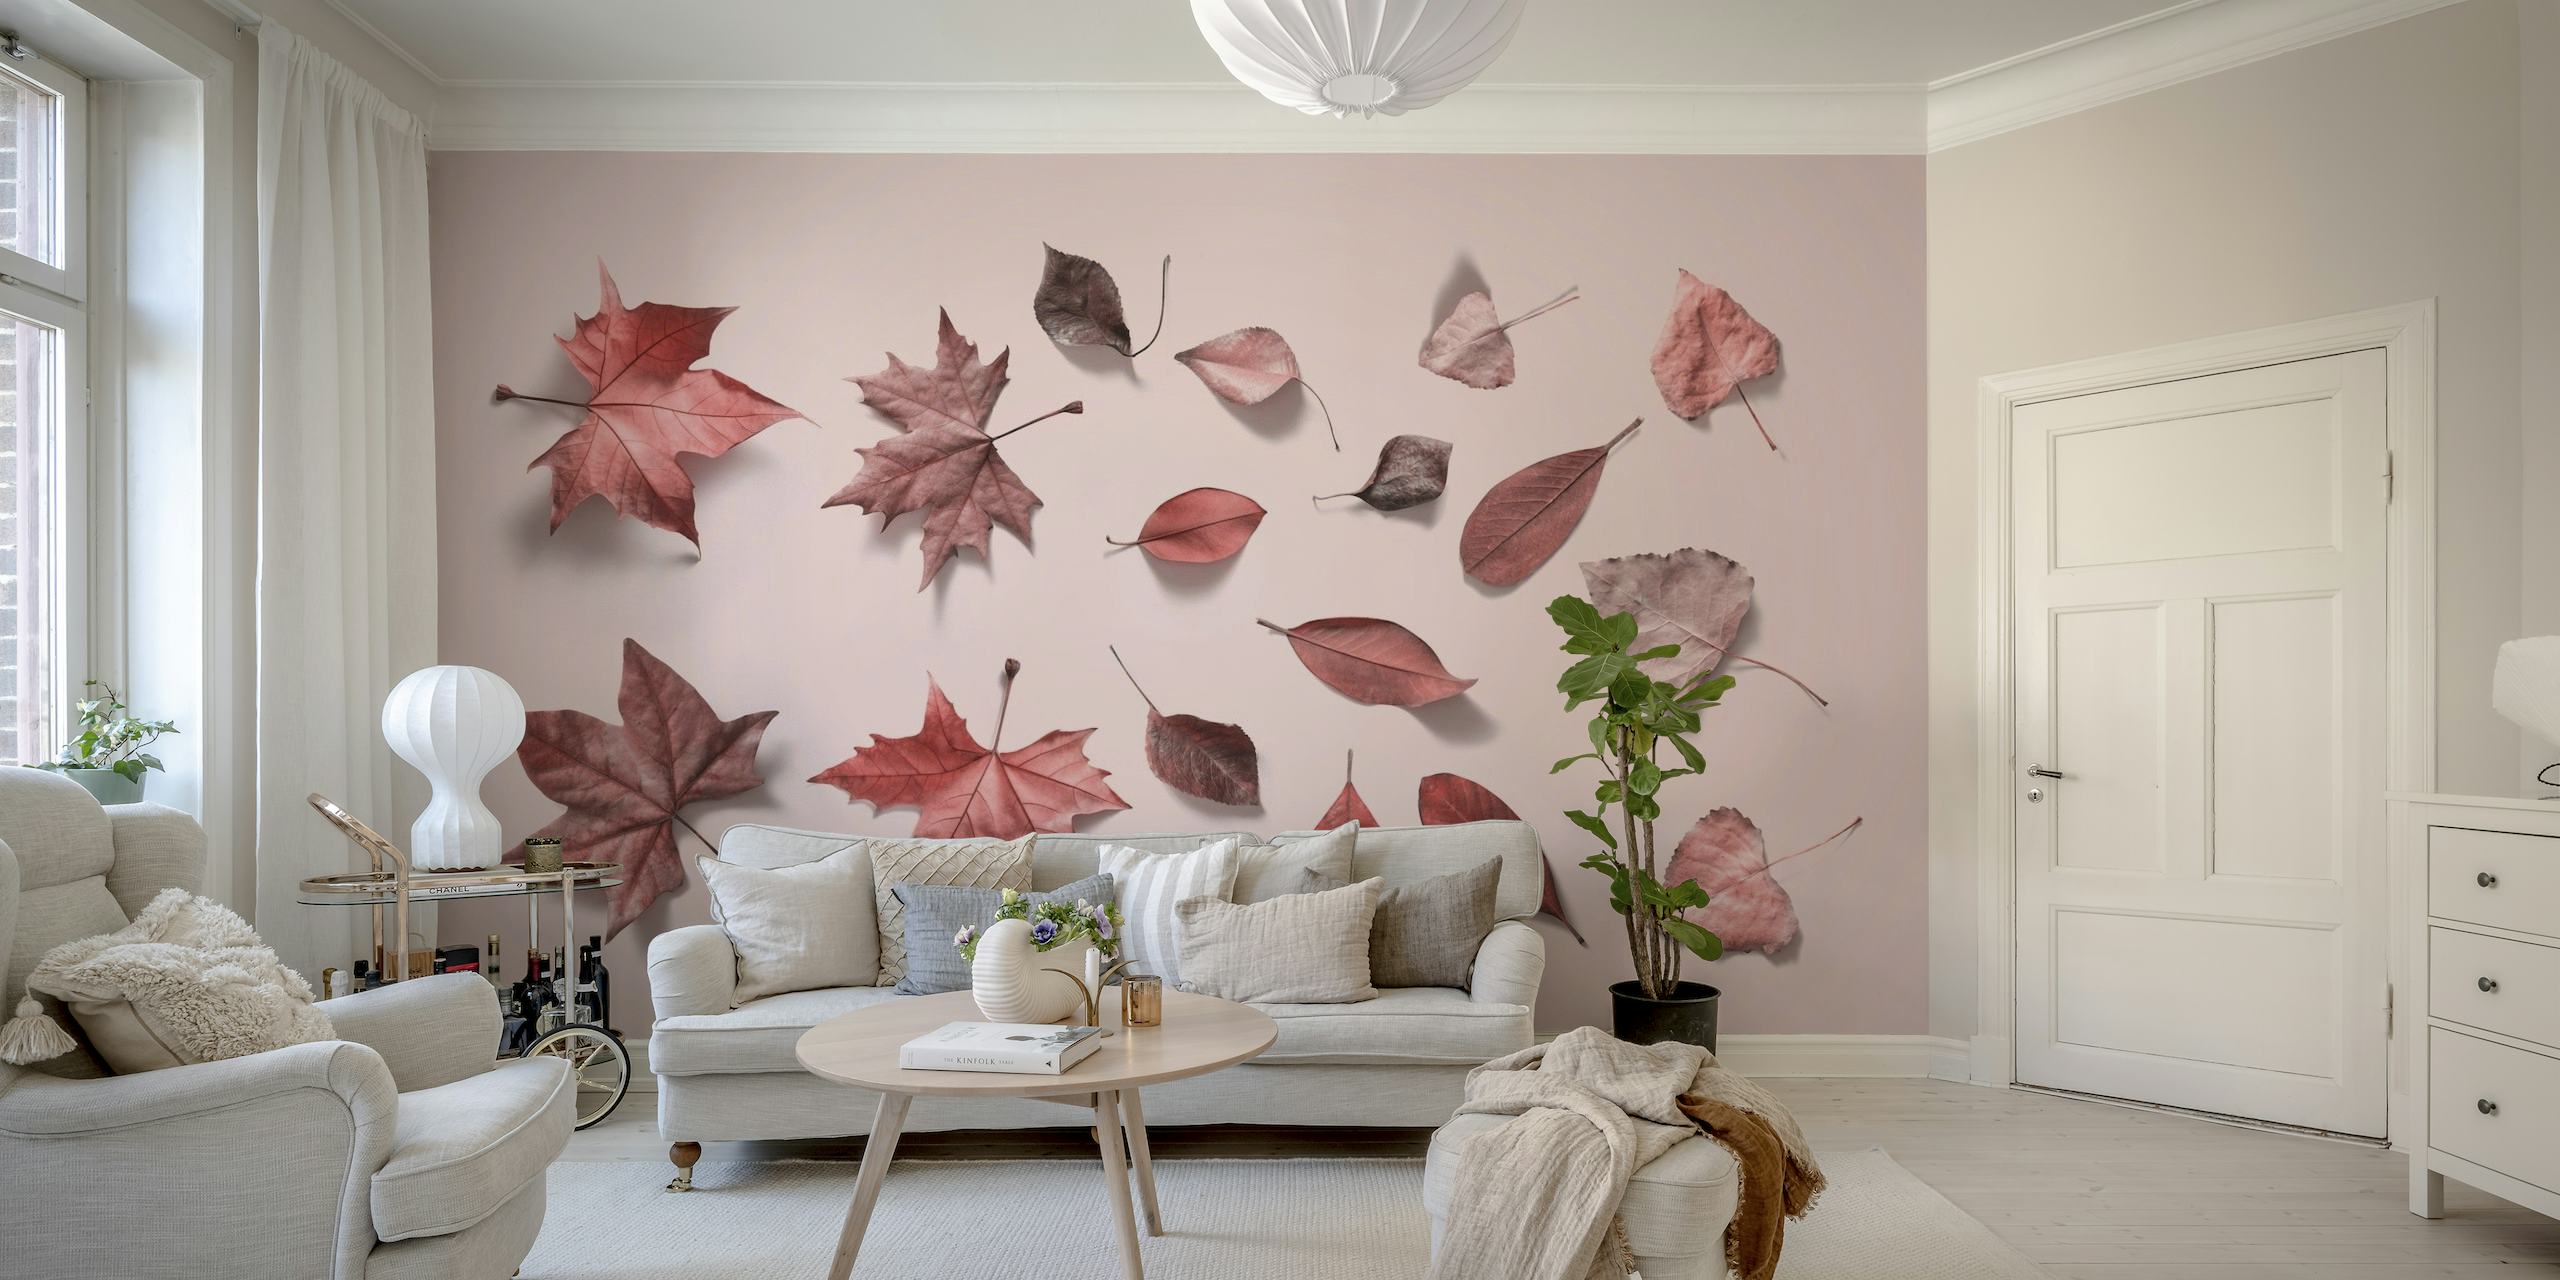 Lichtroze fotobehang met een verspreide opstelling van herfstbladeren in verschillende roze tinten.